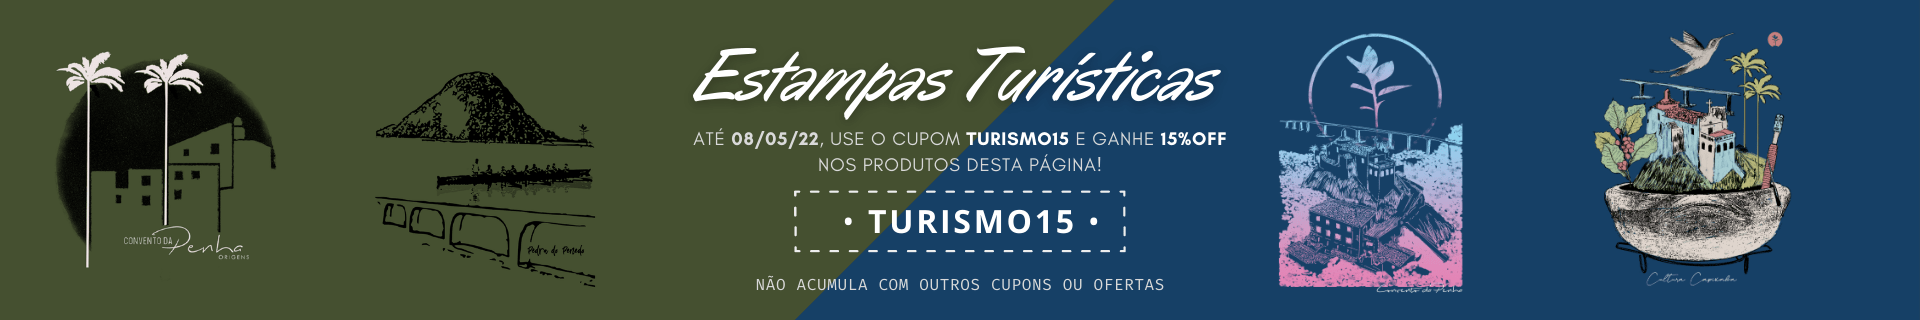 Seleção Pontos Turísticos | Use TURISMO15 e ganhe 15%OFF nos produtos desta página. Só até 08/05/22. Não acumula com outros cupons e ofertas.